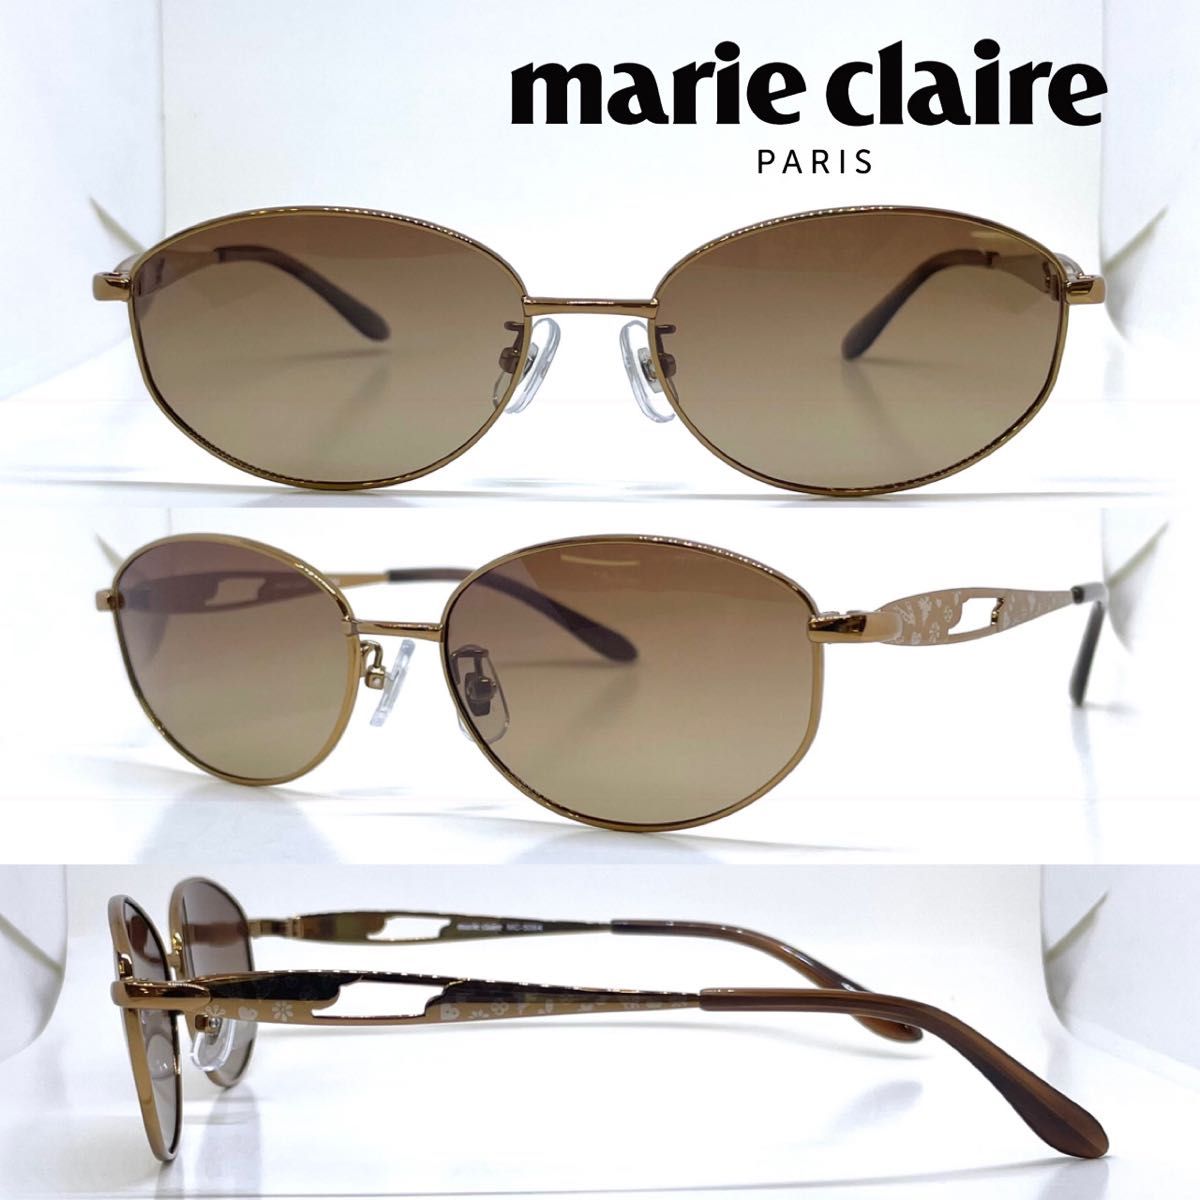 marie claire マリクレール 偏光 サングラス MC5064 4 BR ブラウン BRH偏光 ブラウンハーフ偏光レンズ